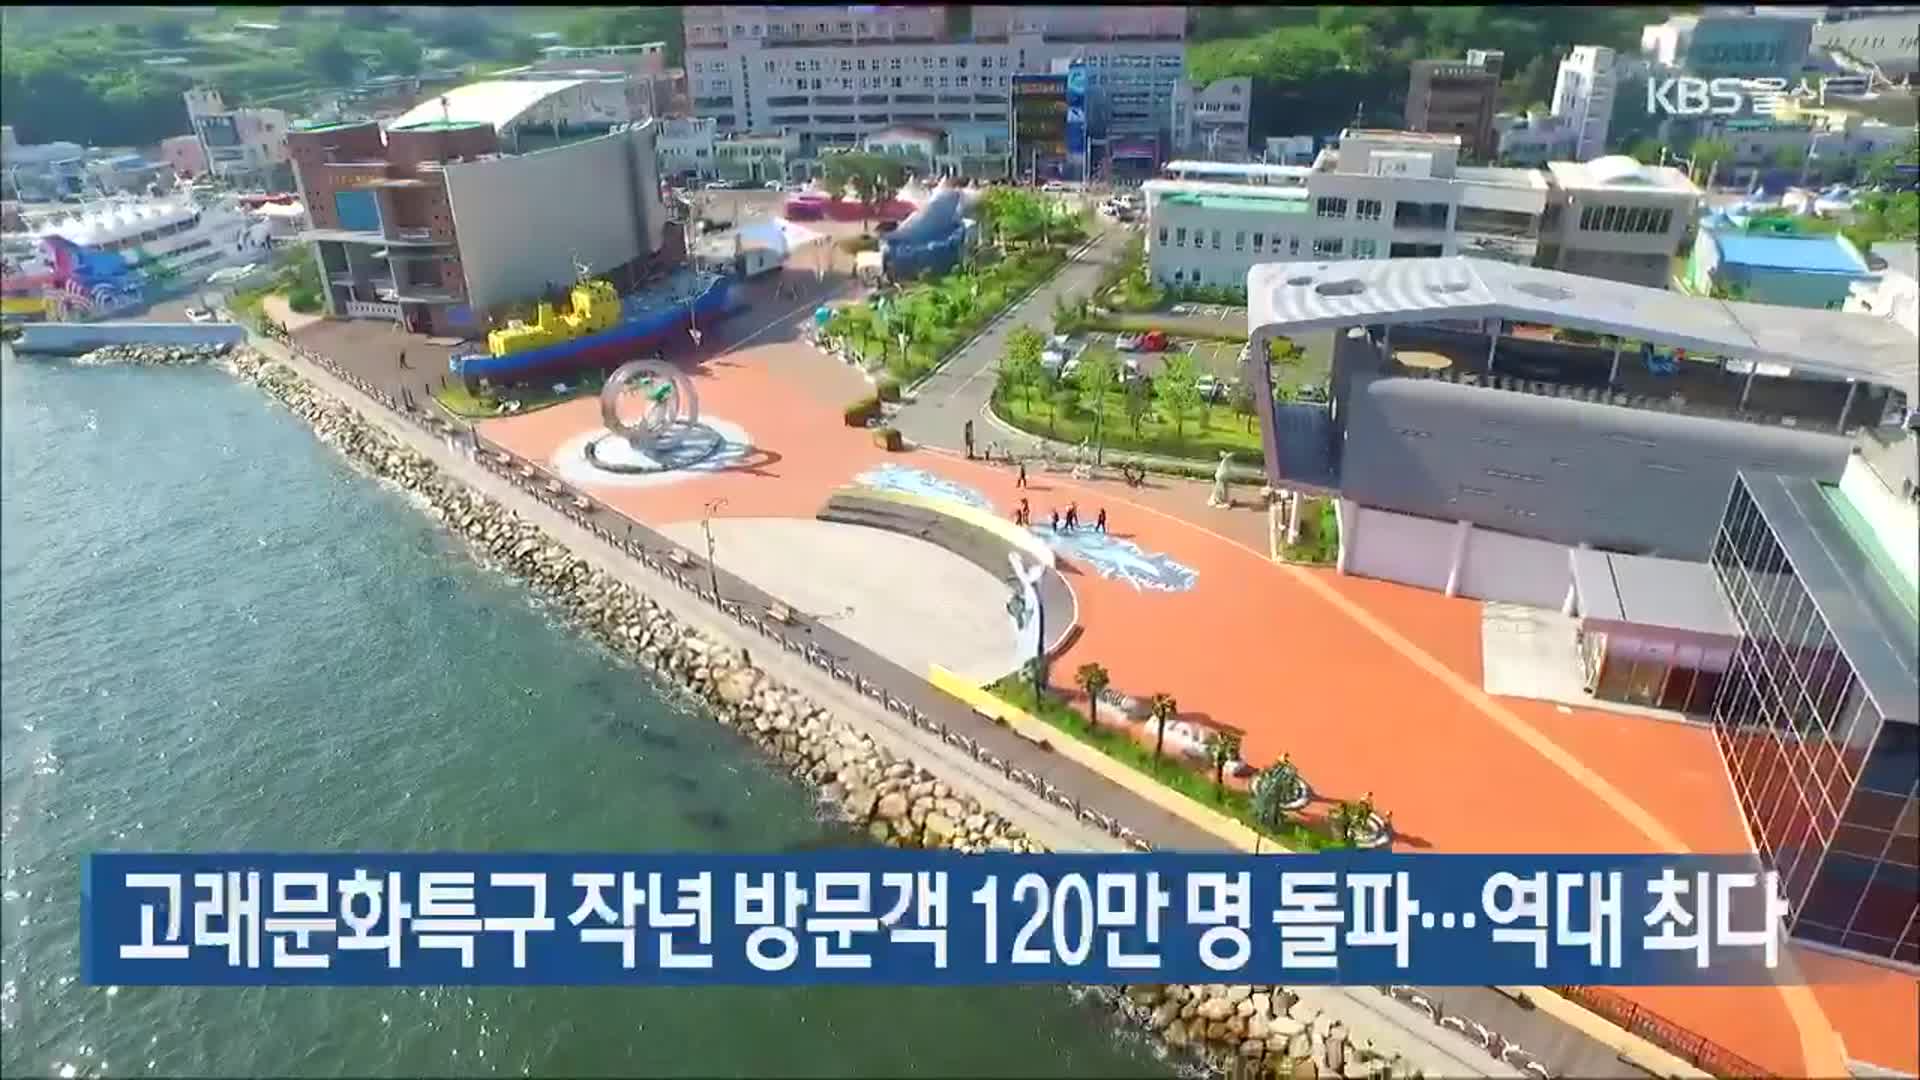 고래문화특구 작년 방문객 120만 명 돌파…역대 최다